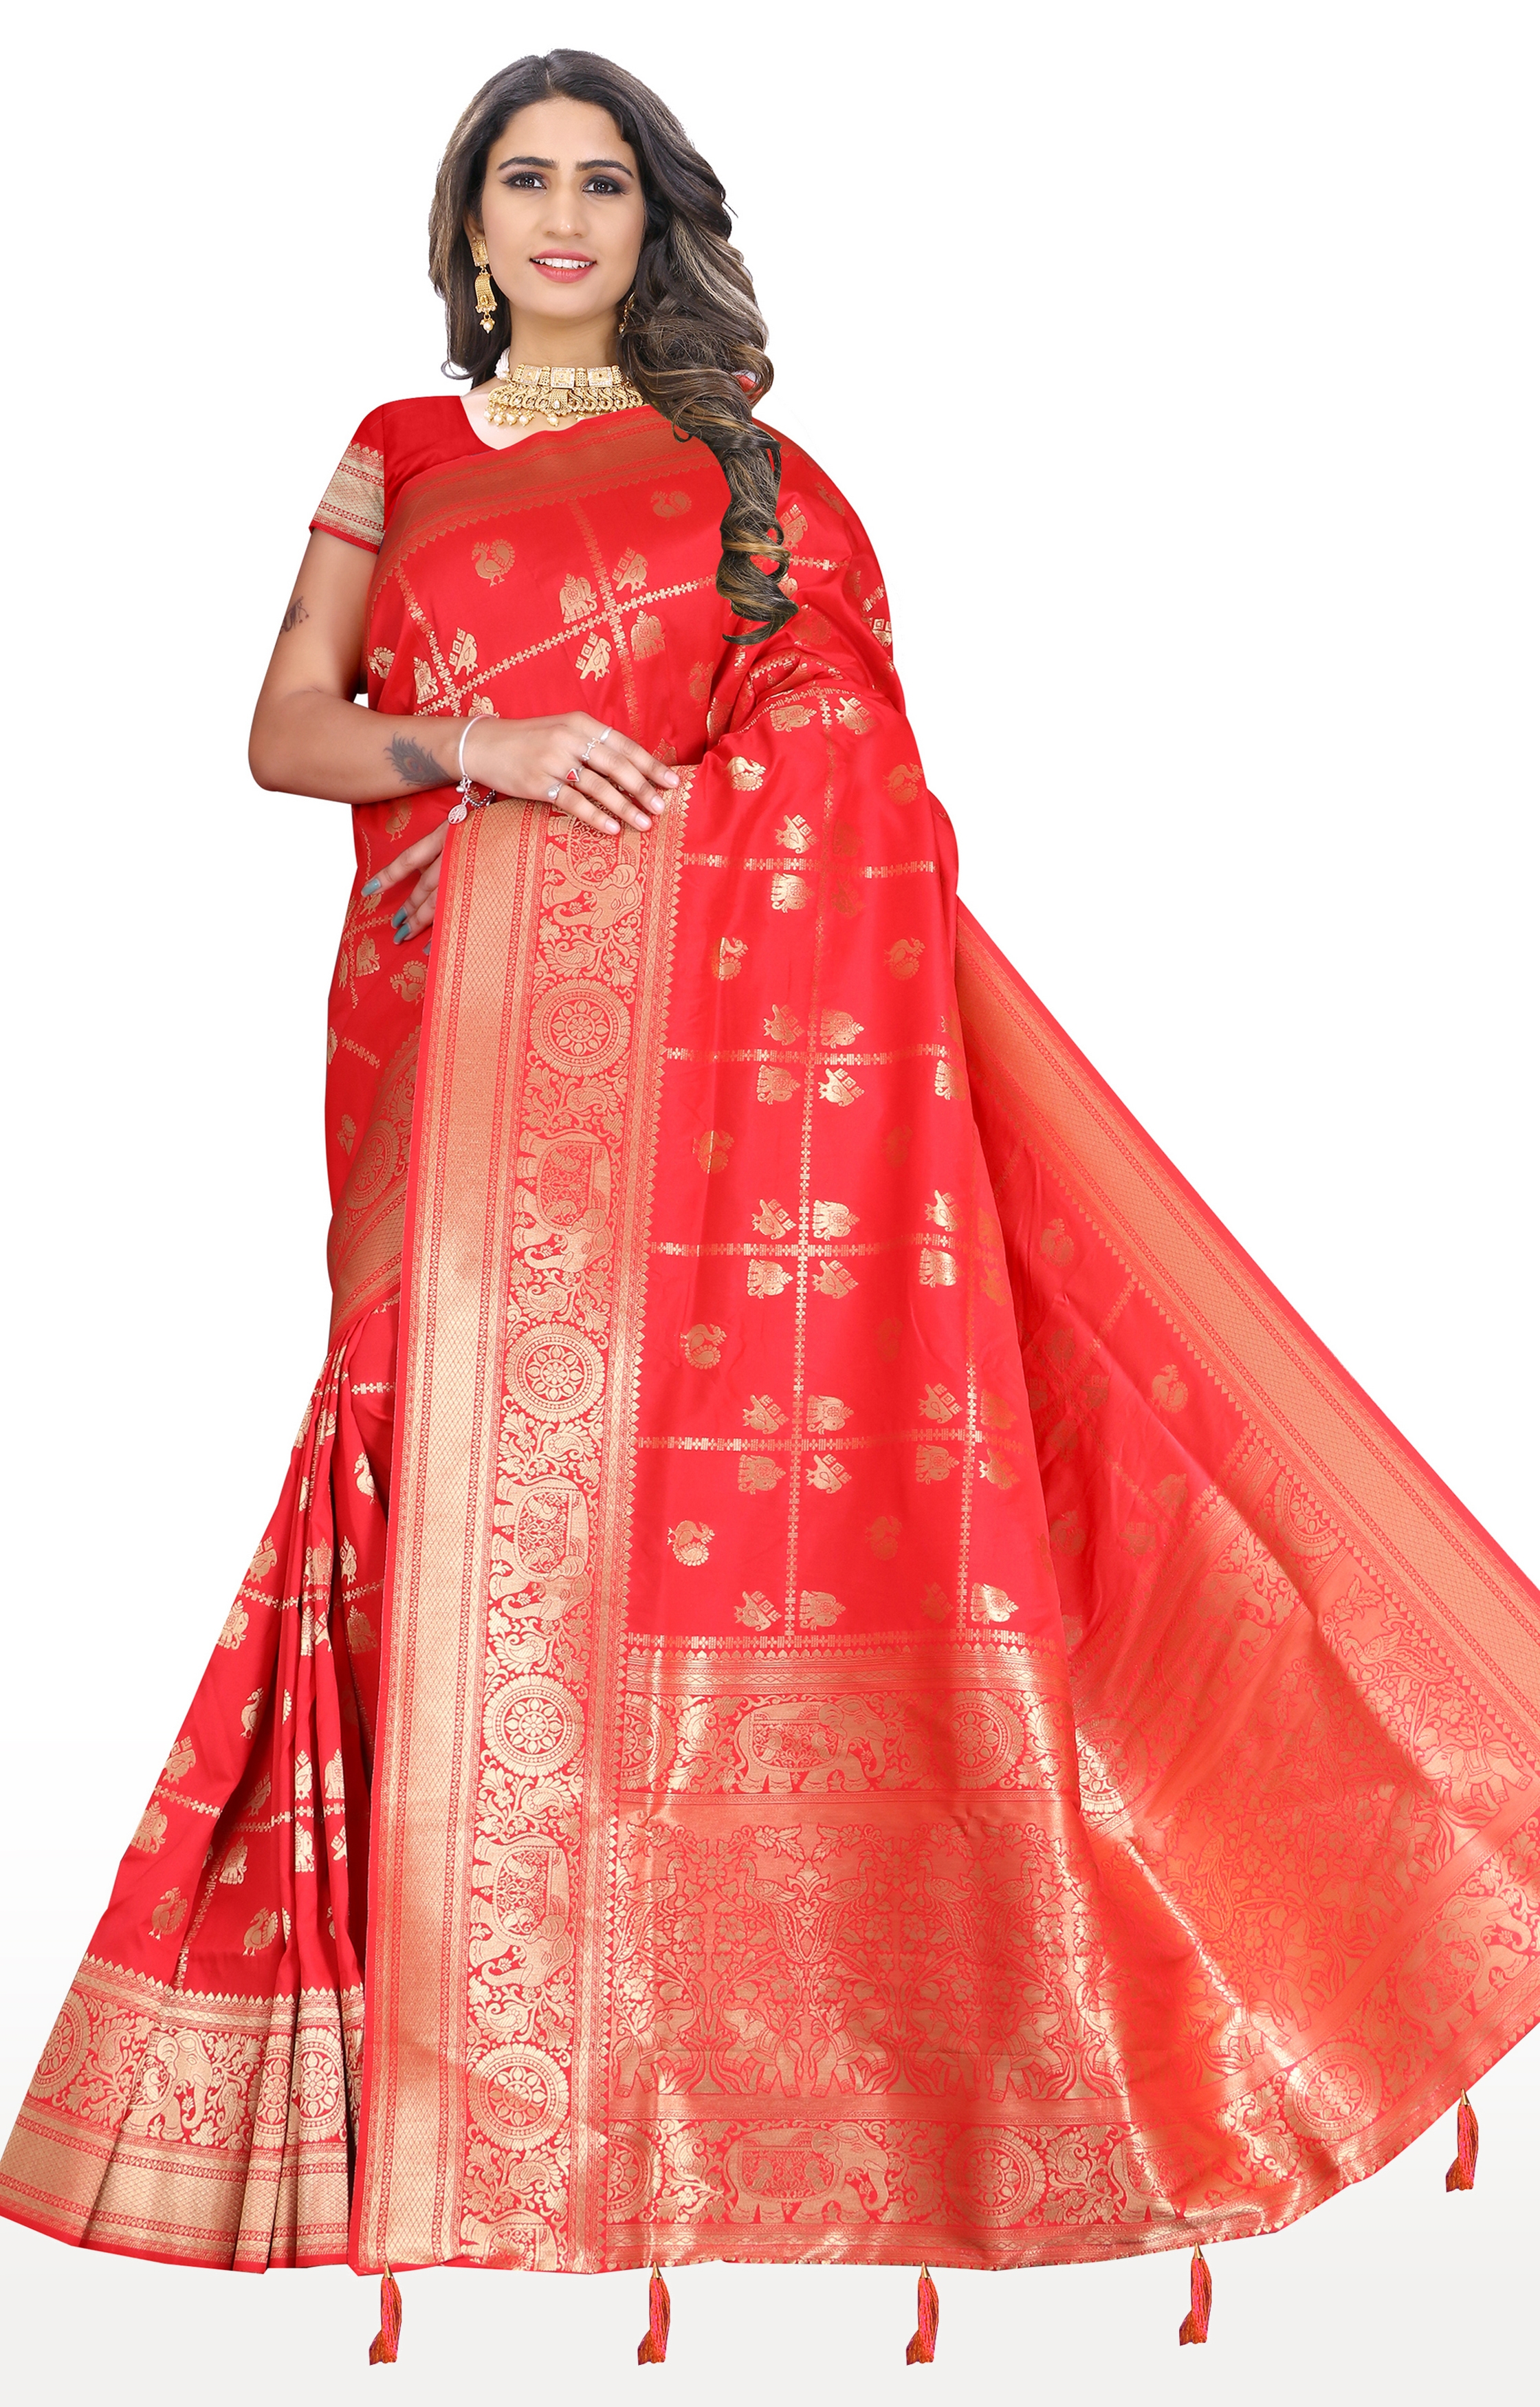 Glemora | Glemora Saree for Women Banarasi Silk Saree With Blouse (Red)